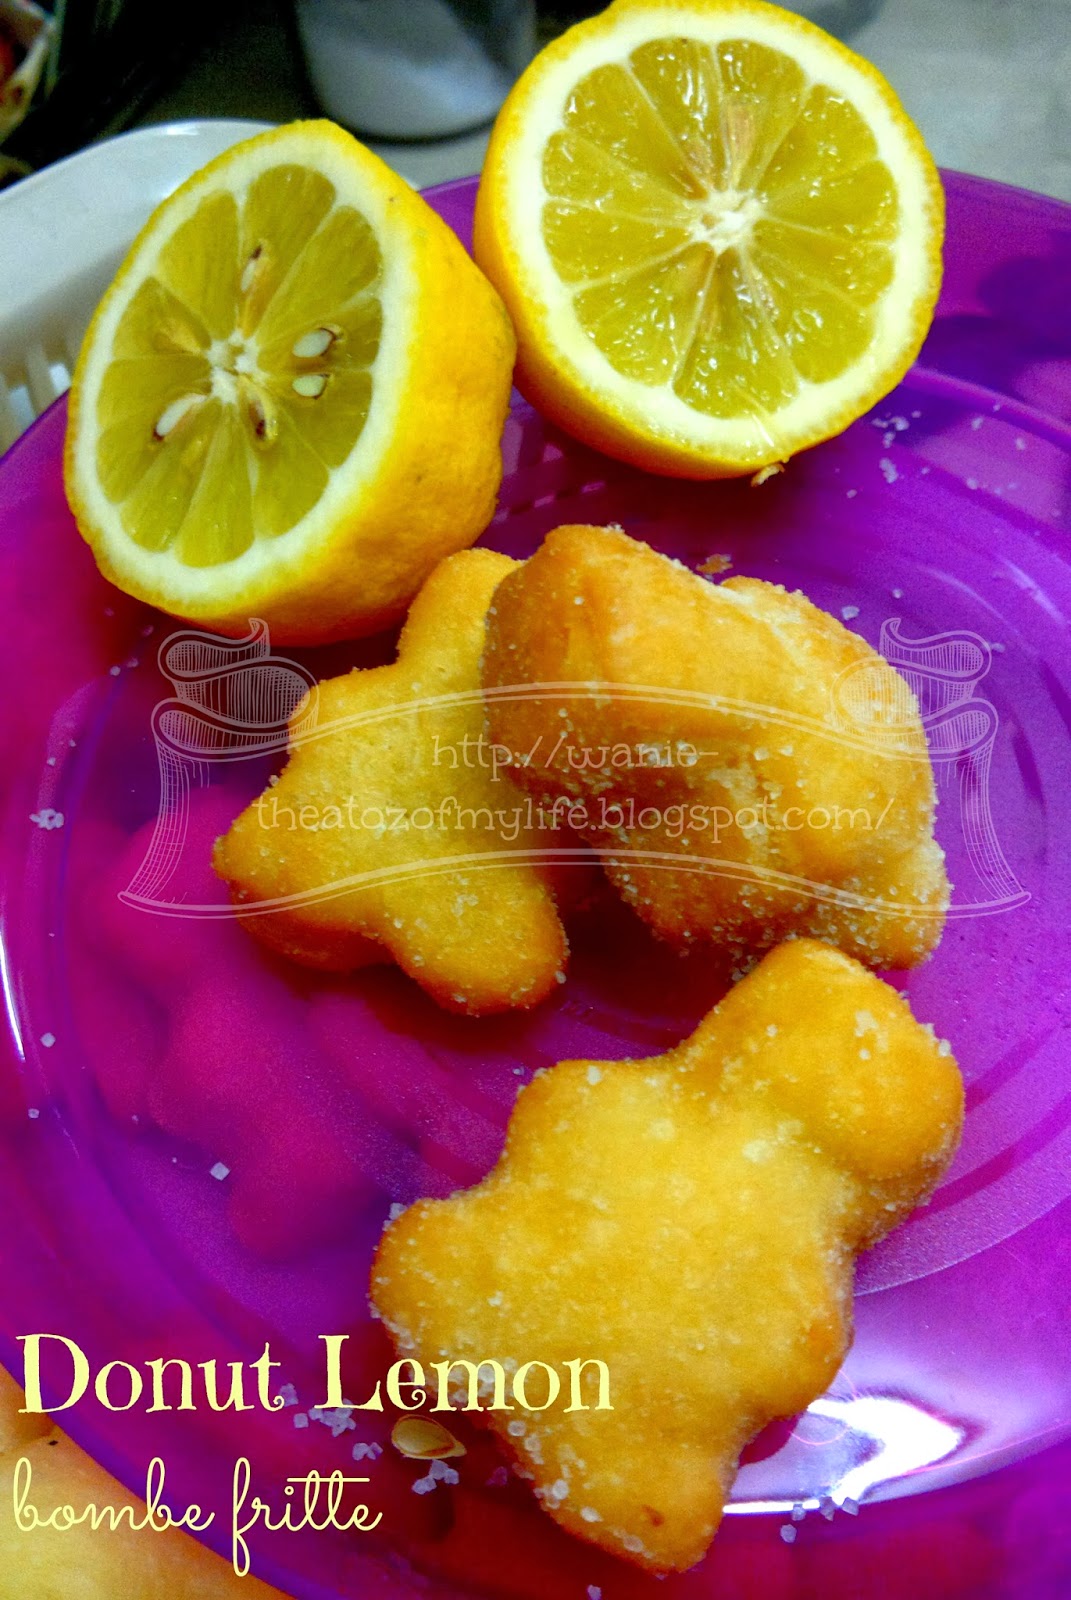 Kebun sejemput: Donut Lemon Tanpa Telur - Bombe Fritte 